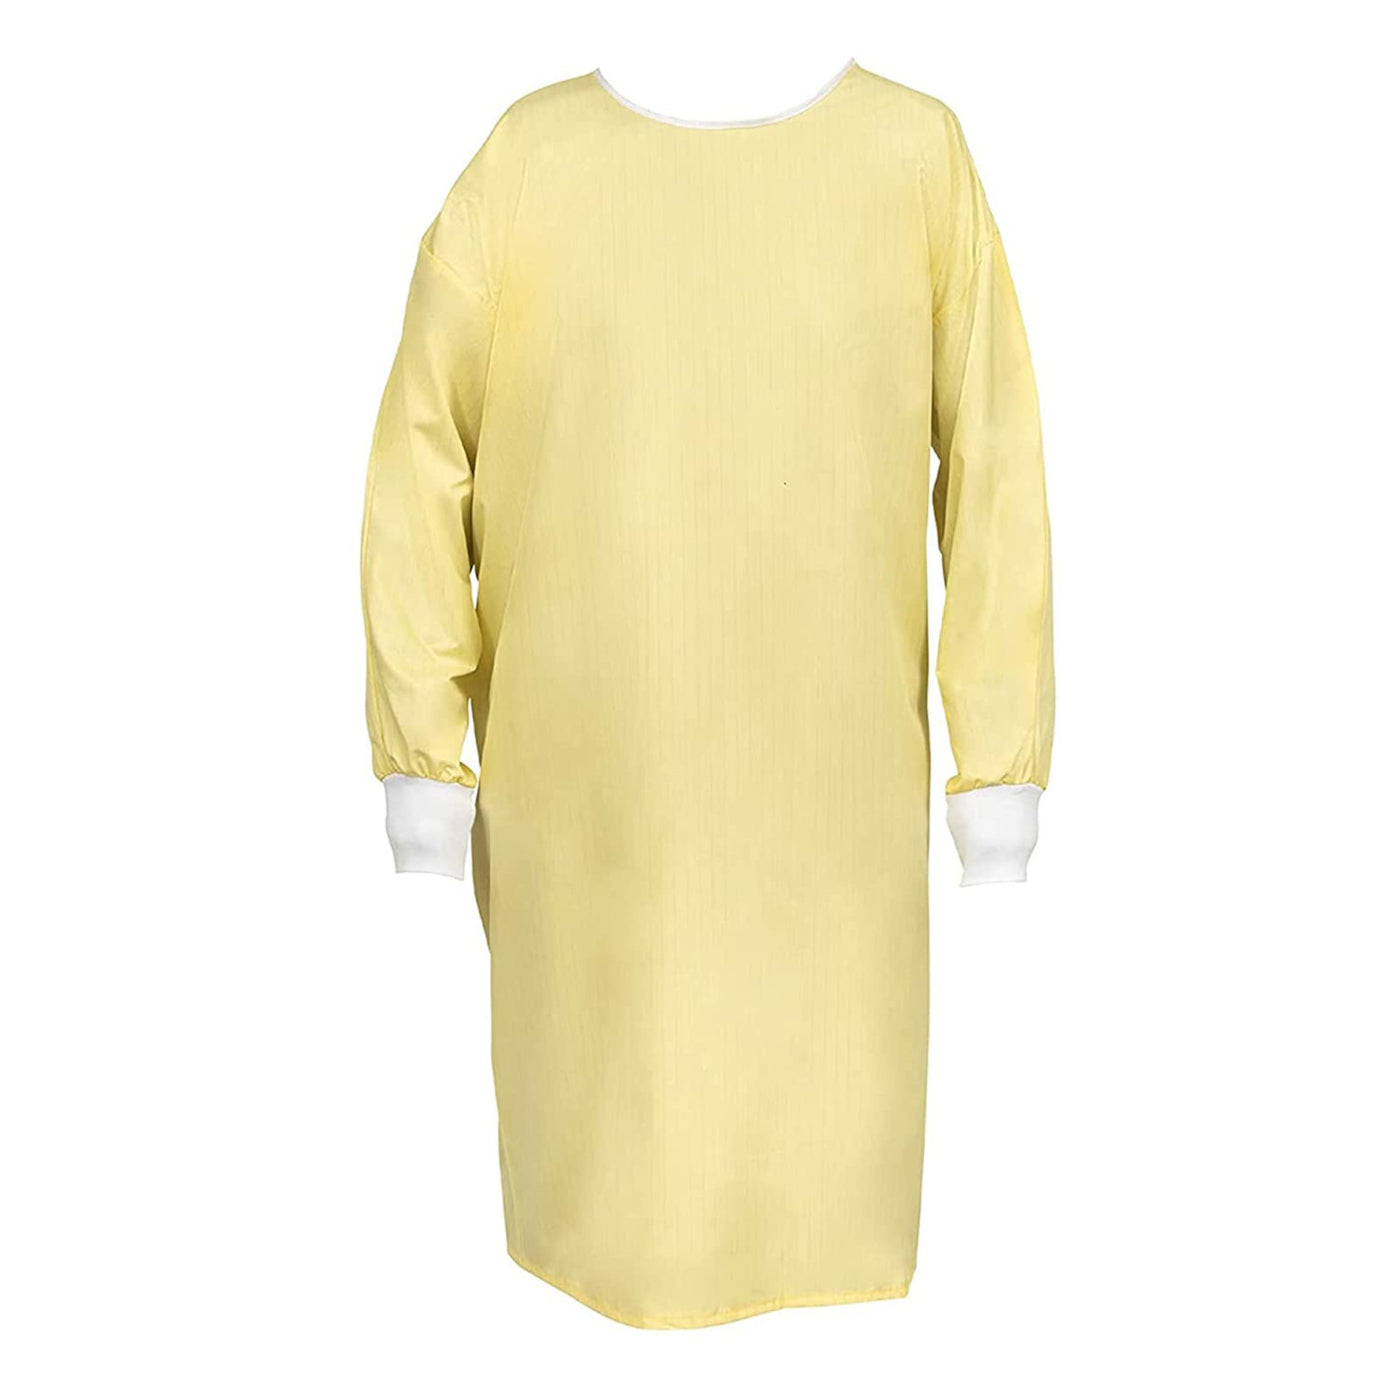 Wholesale Reusable Isolation Gown Yellow  1 Dozen